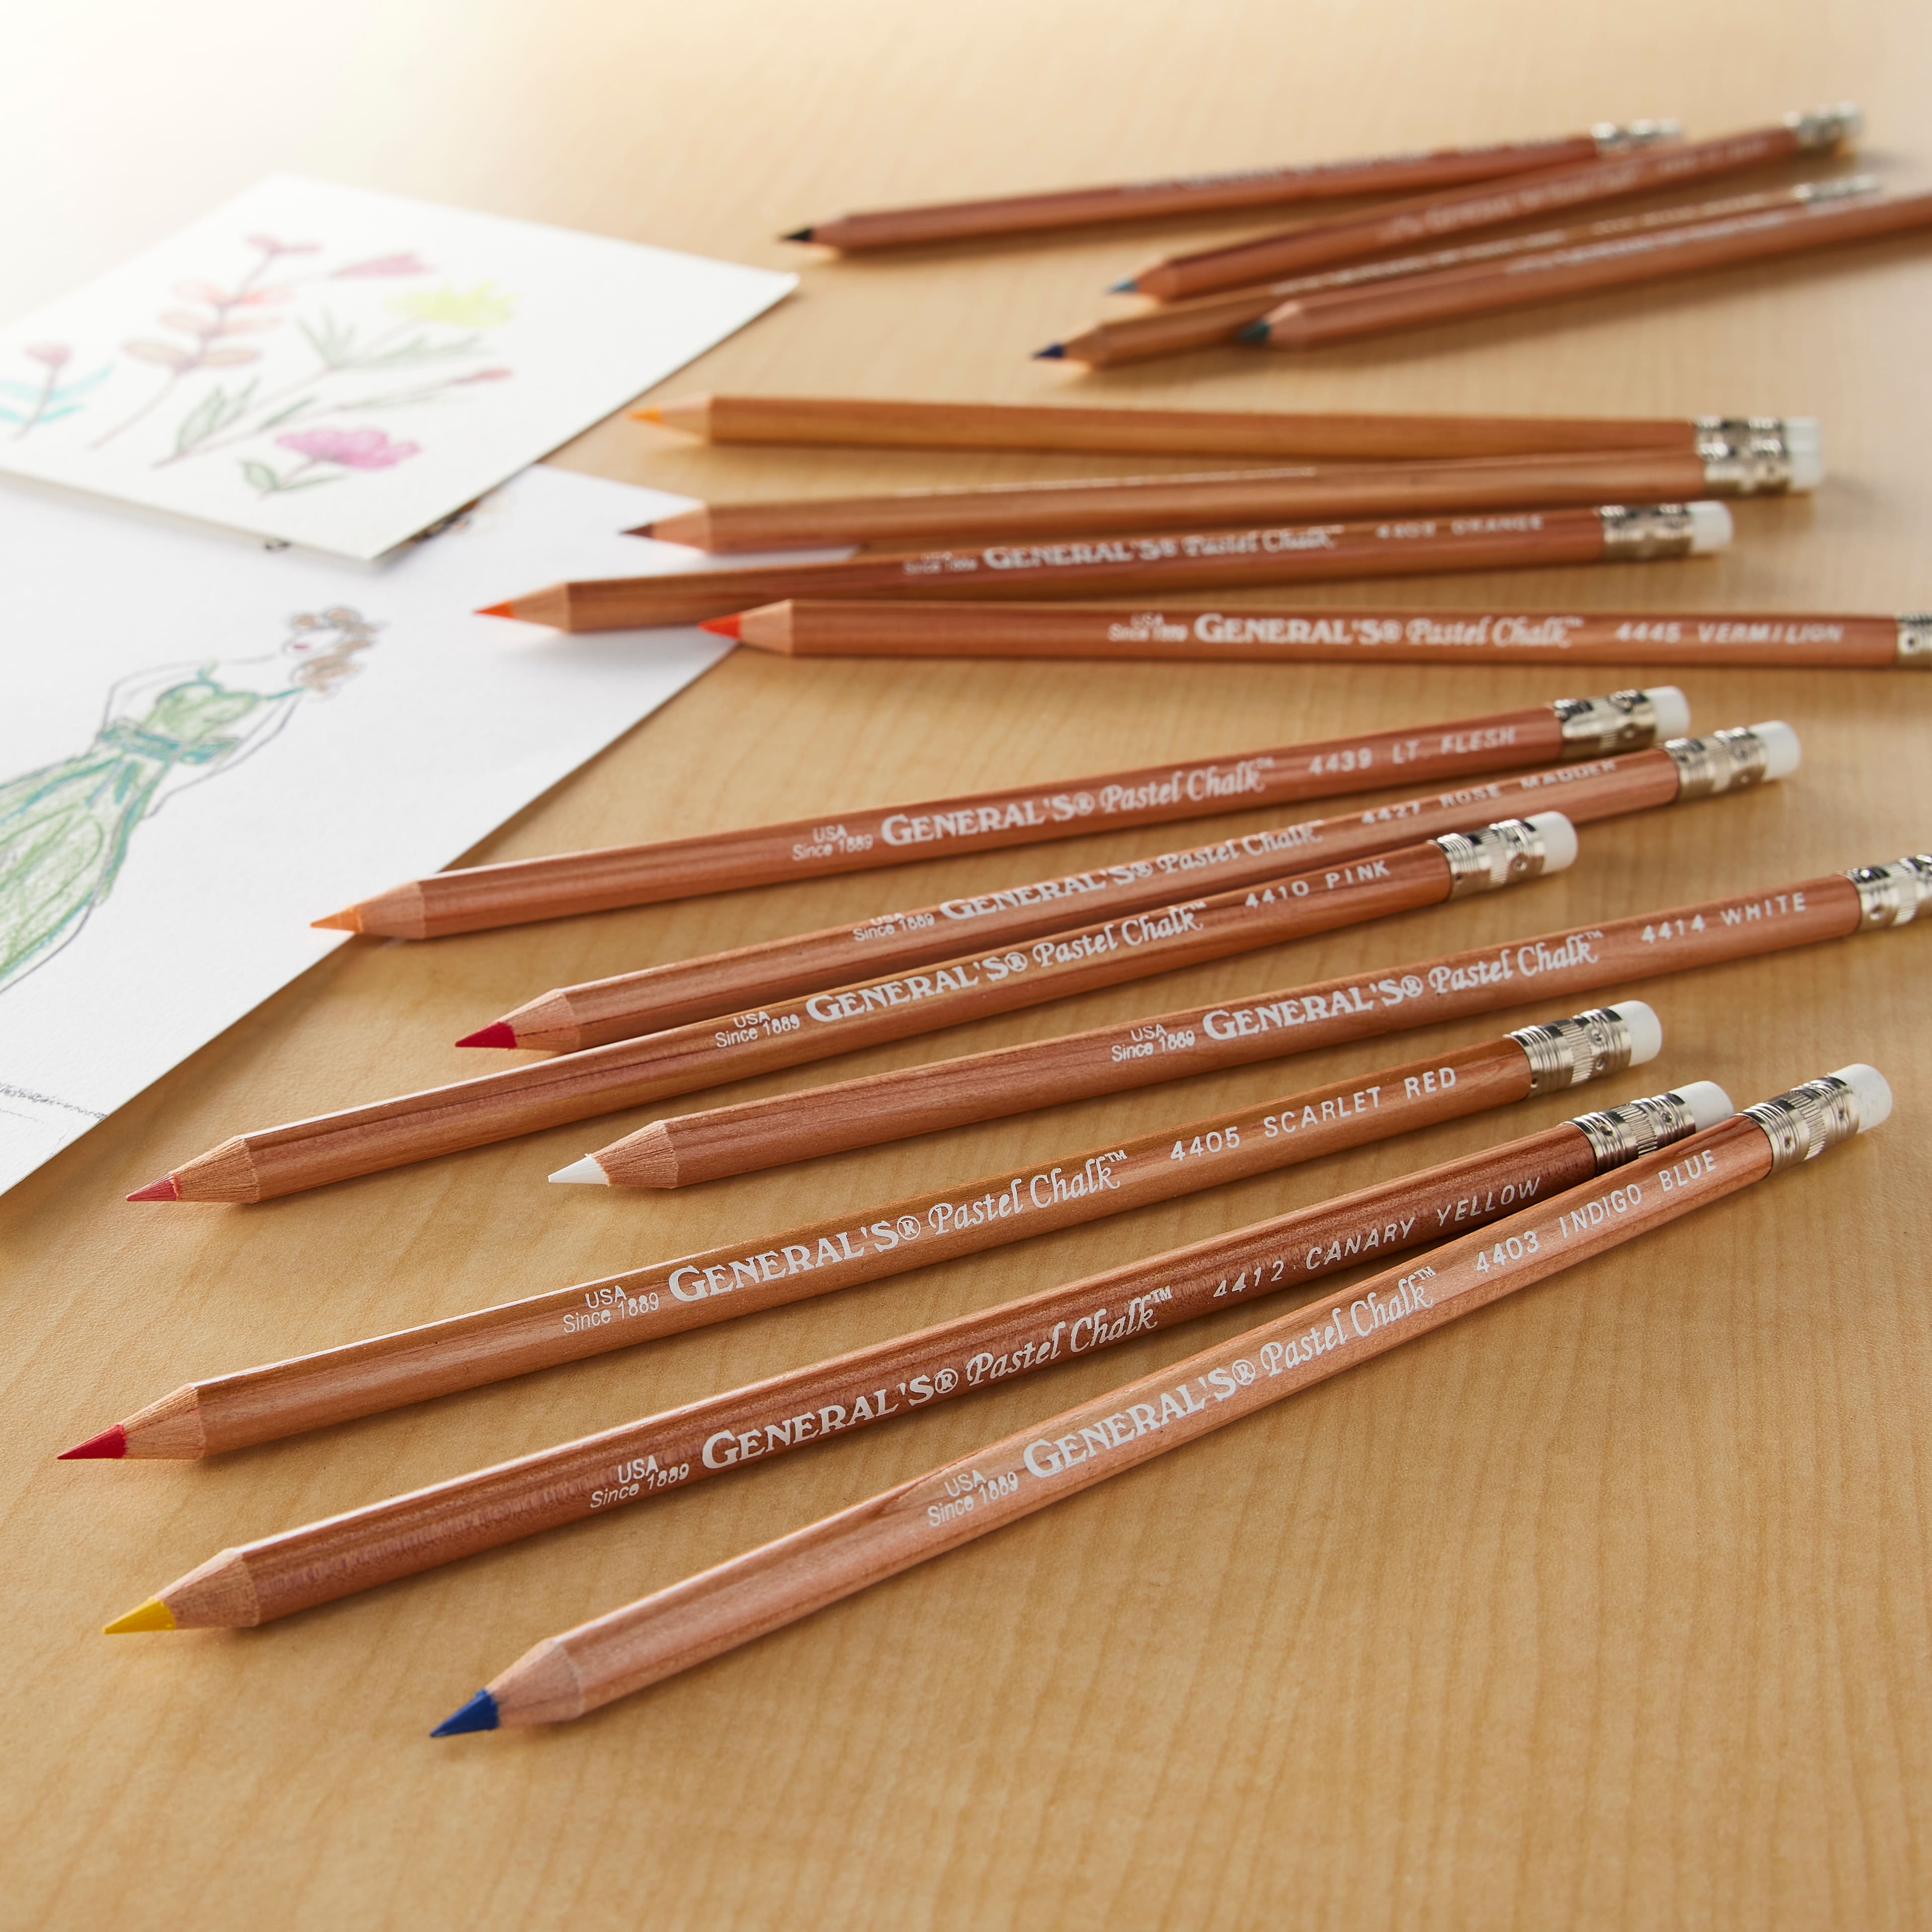  General Pencil 4400-12A General's Pastel Chalk Pencils